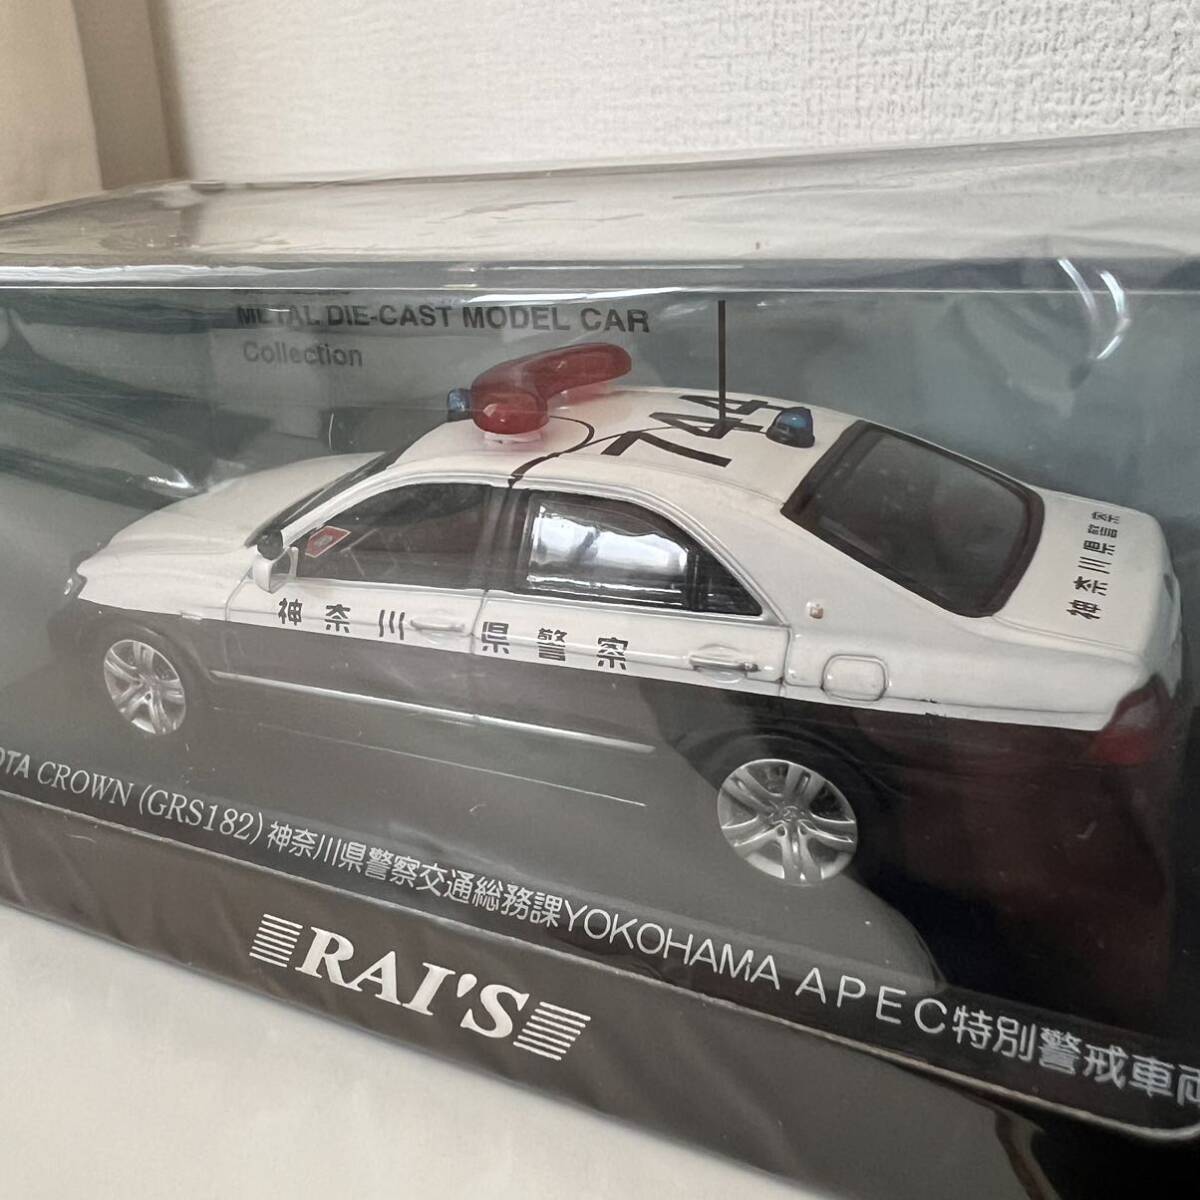 未使用 RAI’S HL7431008TOYOTA CROWN(GRS182) PATOROL CAR 2010 神奈川県警察 交通総務課特別警戒車両 ミニカー 1/43スケール_画像5